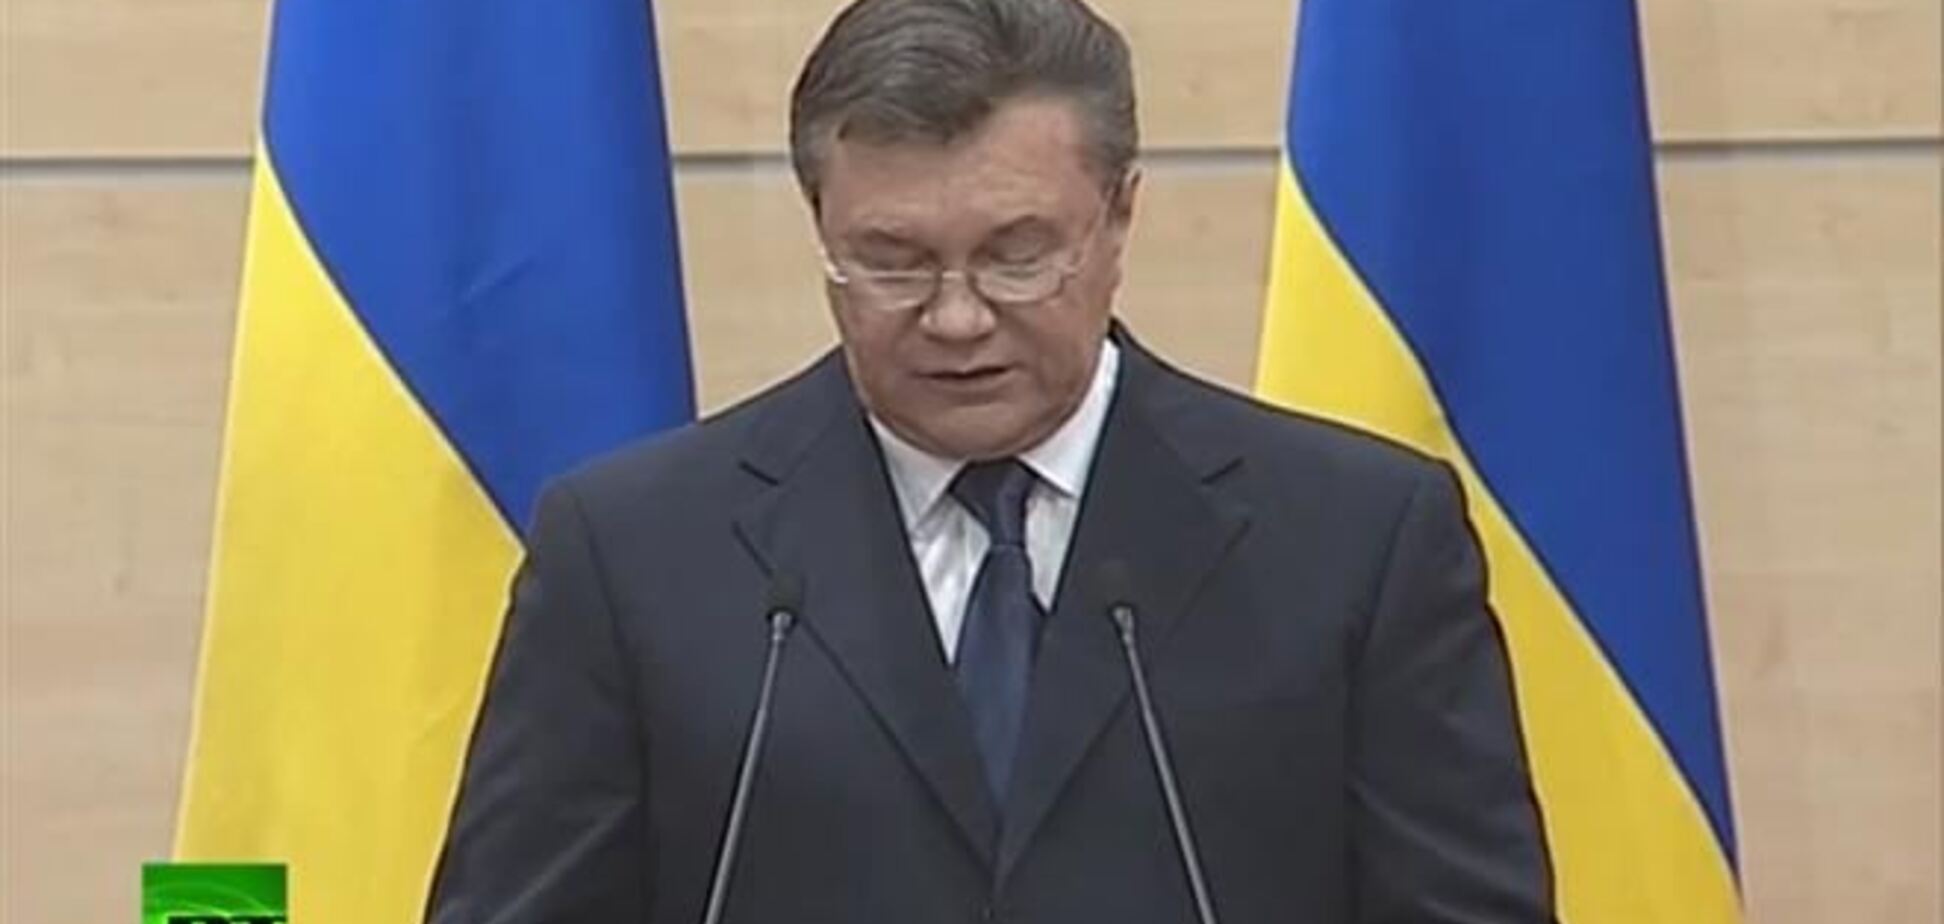 Нова влада в Україні хоче 'поставити армію під прапор Бандери' - Янукович